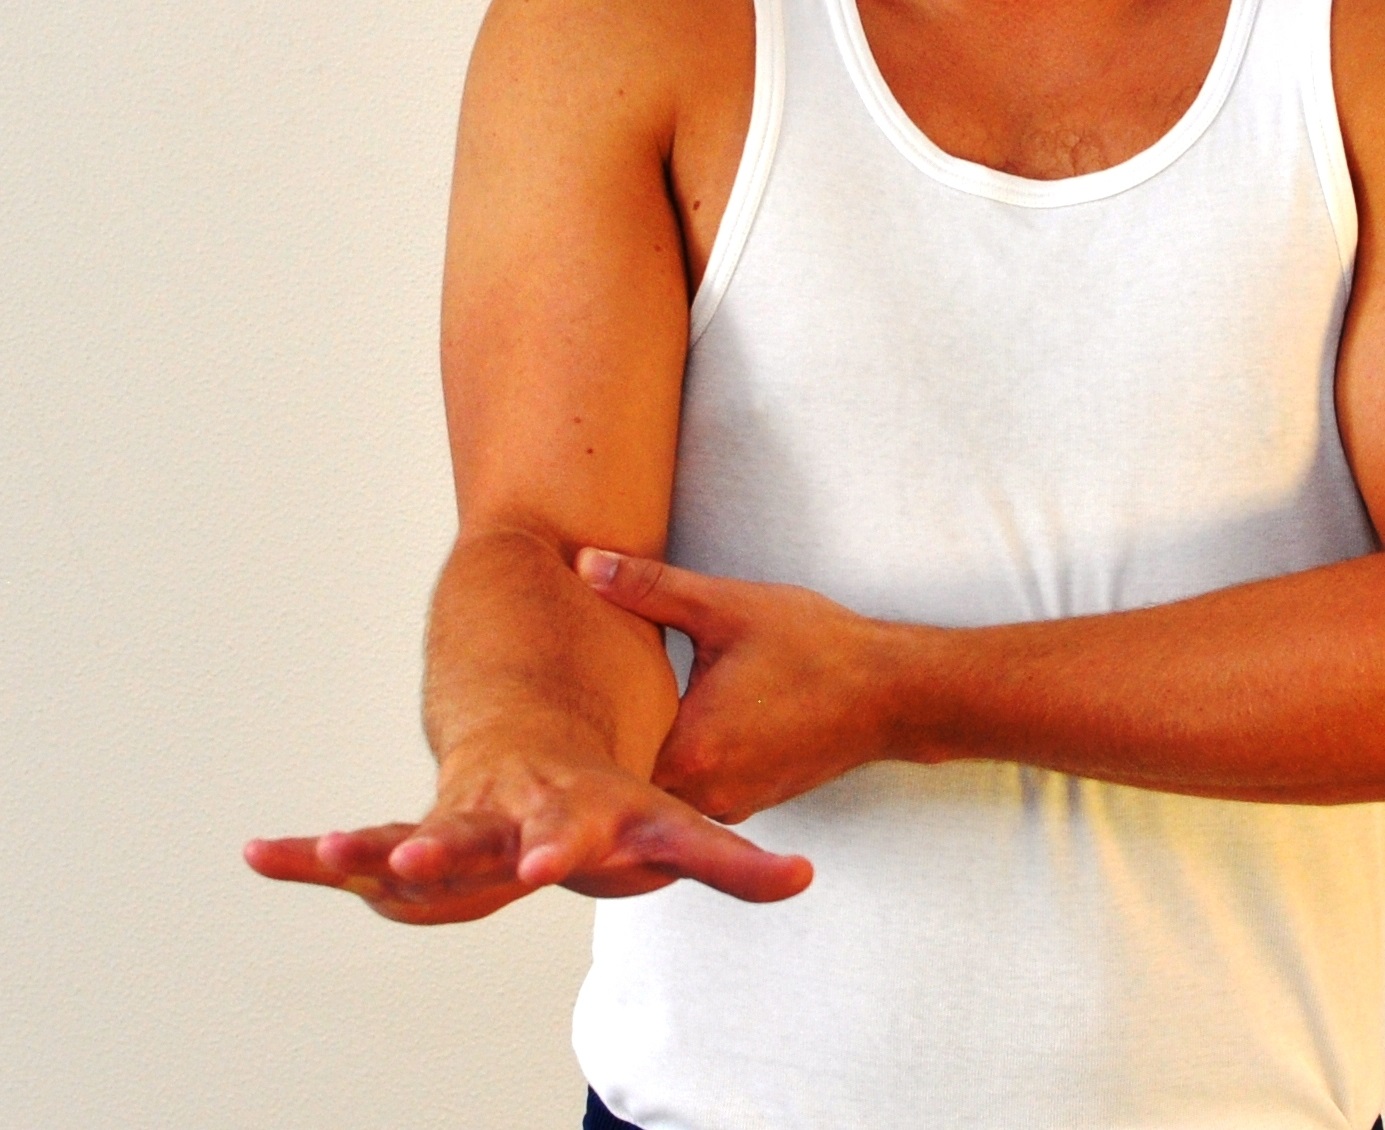 Strakt underarm - håndfladen vender nedad - spredte og strakte fingre.